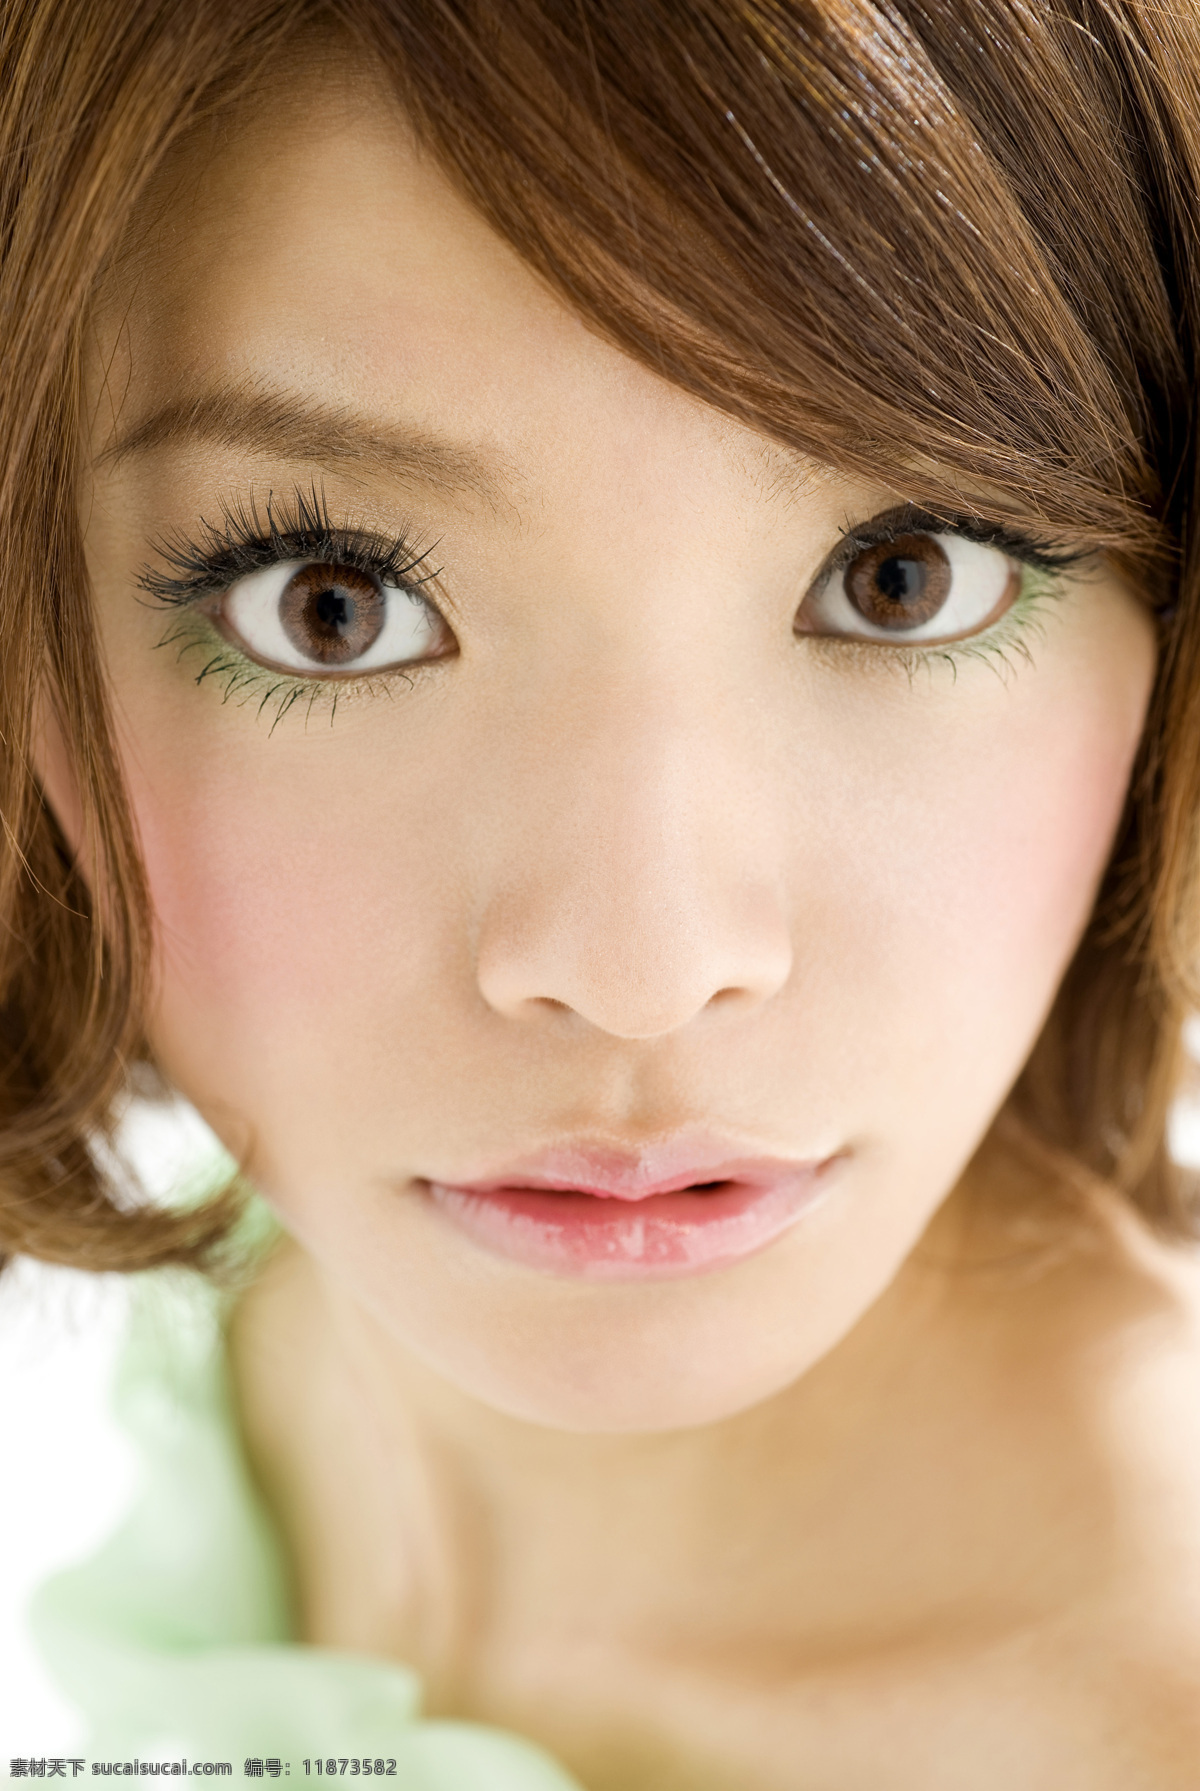 亚洲美女写真 日本 美容素材 超人气 日本美女 时装 模特 女孩 漂亮 美丽 公主 清纯 青春 甜美 气质 高清晰 亚洲美女 写真集 人物摄影 人物图库